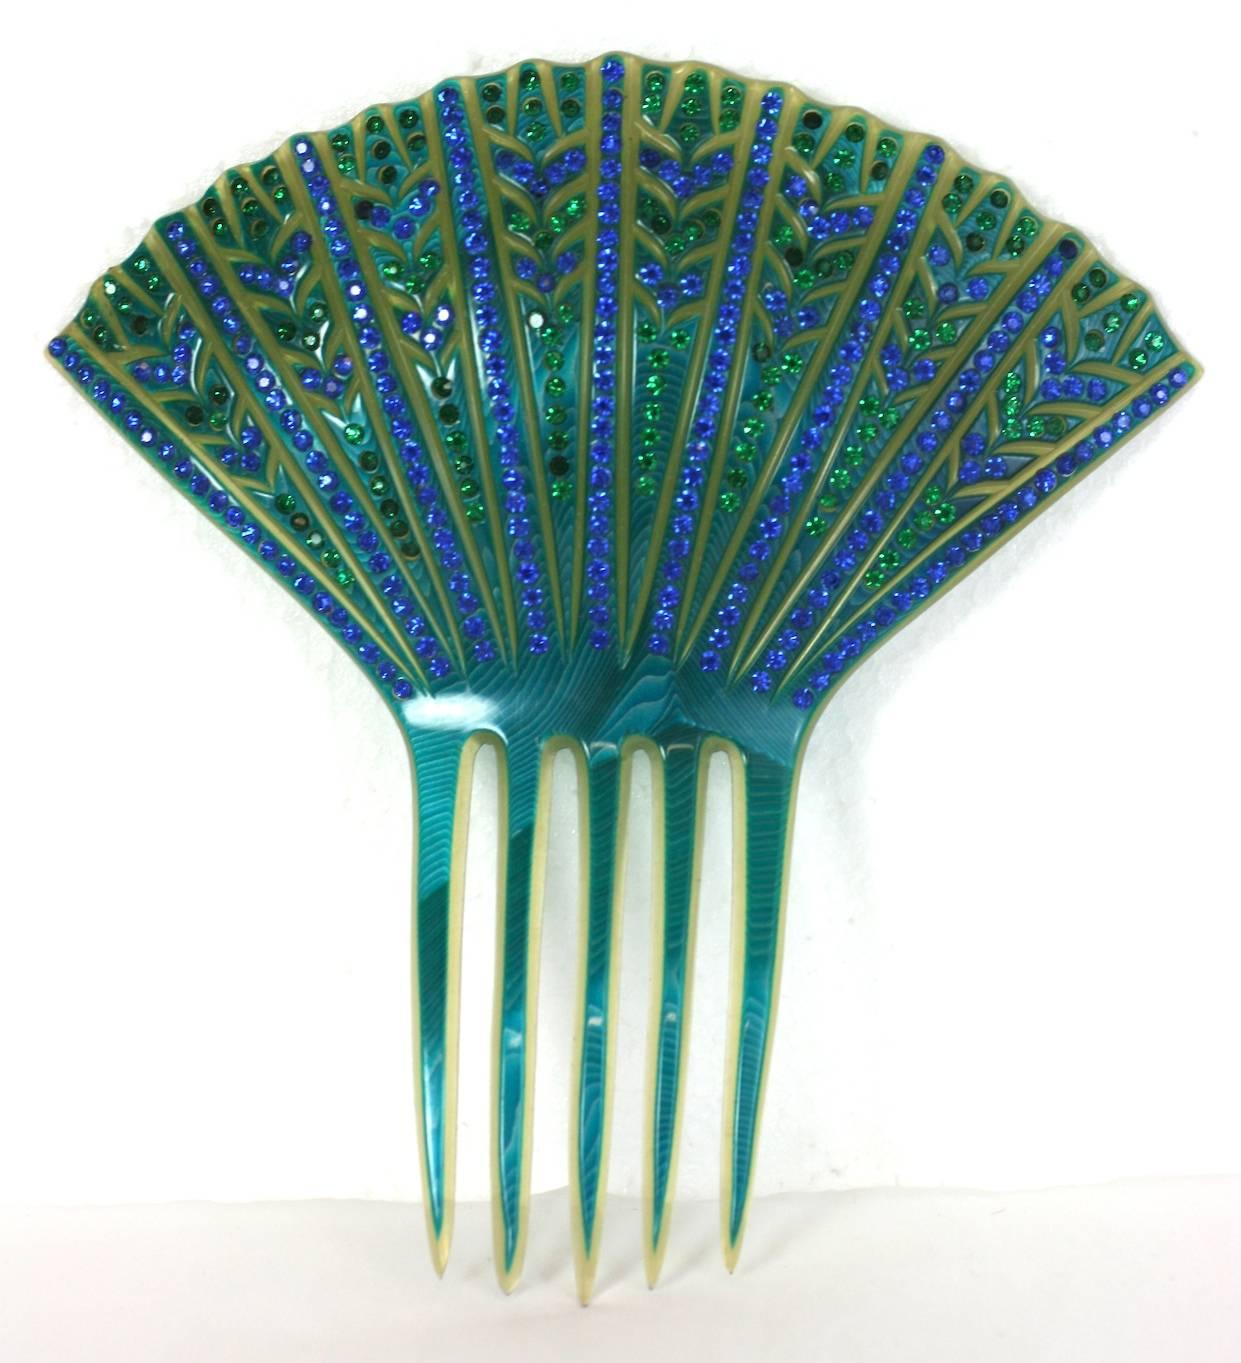 Peigne à pâtes Art Déco français fabriqué en France dans les années 1930. Celluloïd transparent  est recouvert d'un celluloïd turquoise vibrant qui est incisé et sculpté, puis serti à la main de strass pavés dans des tons bleus et verts. Design Art